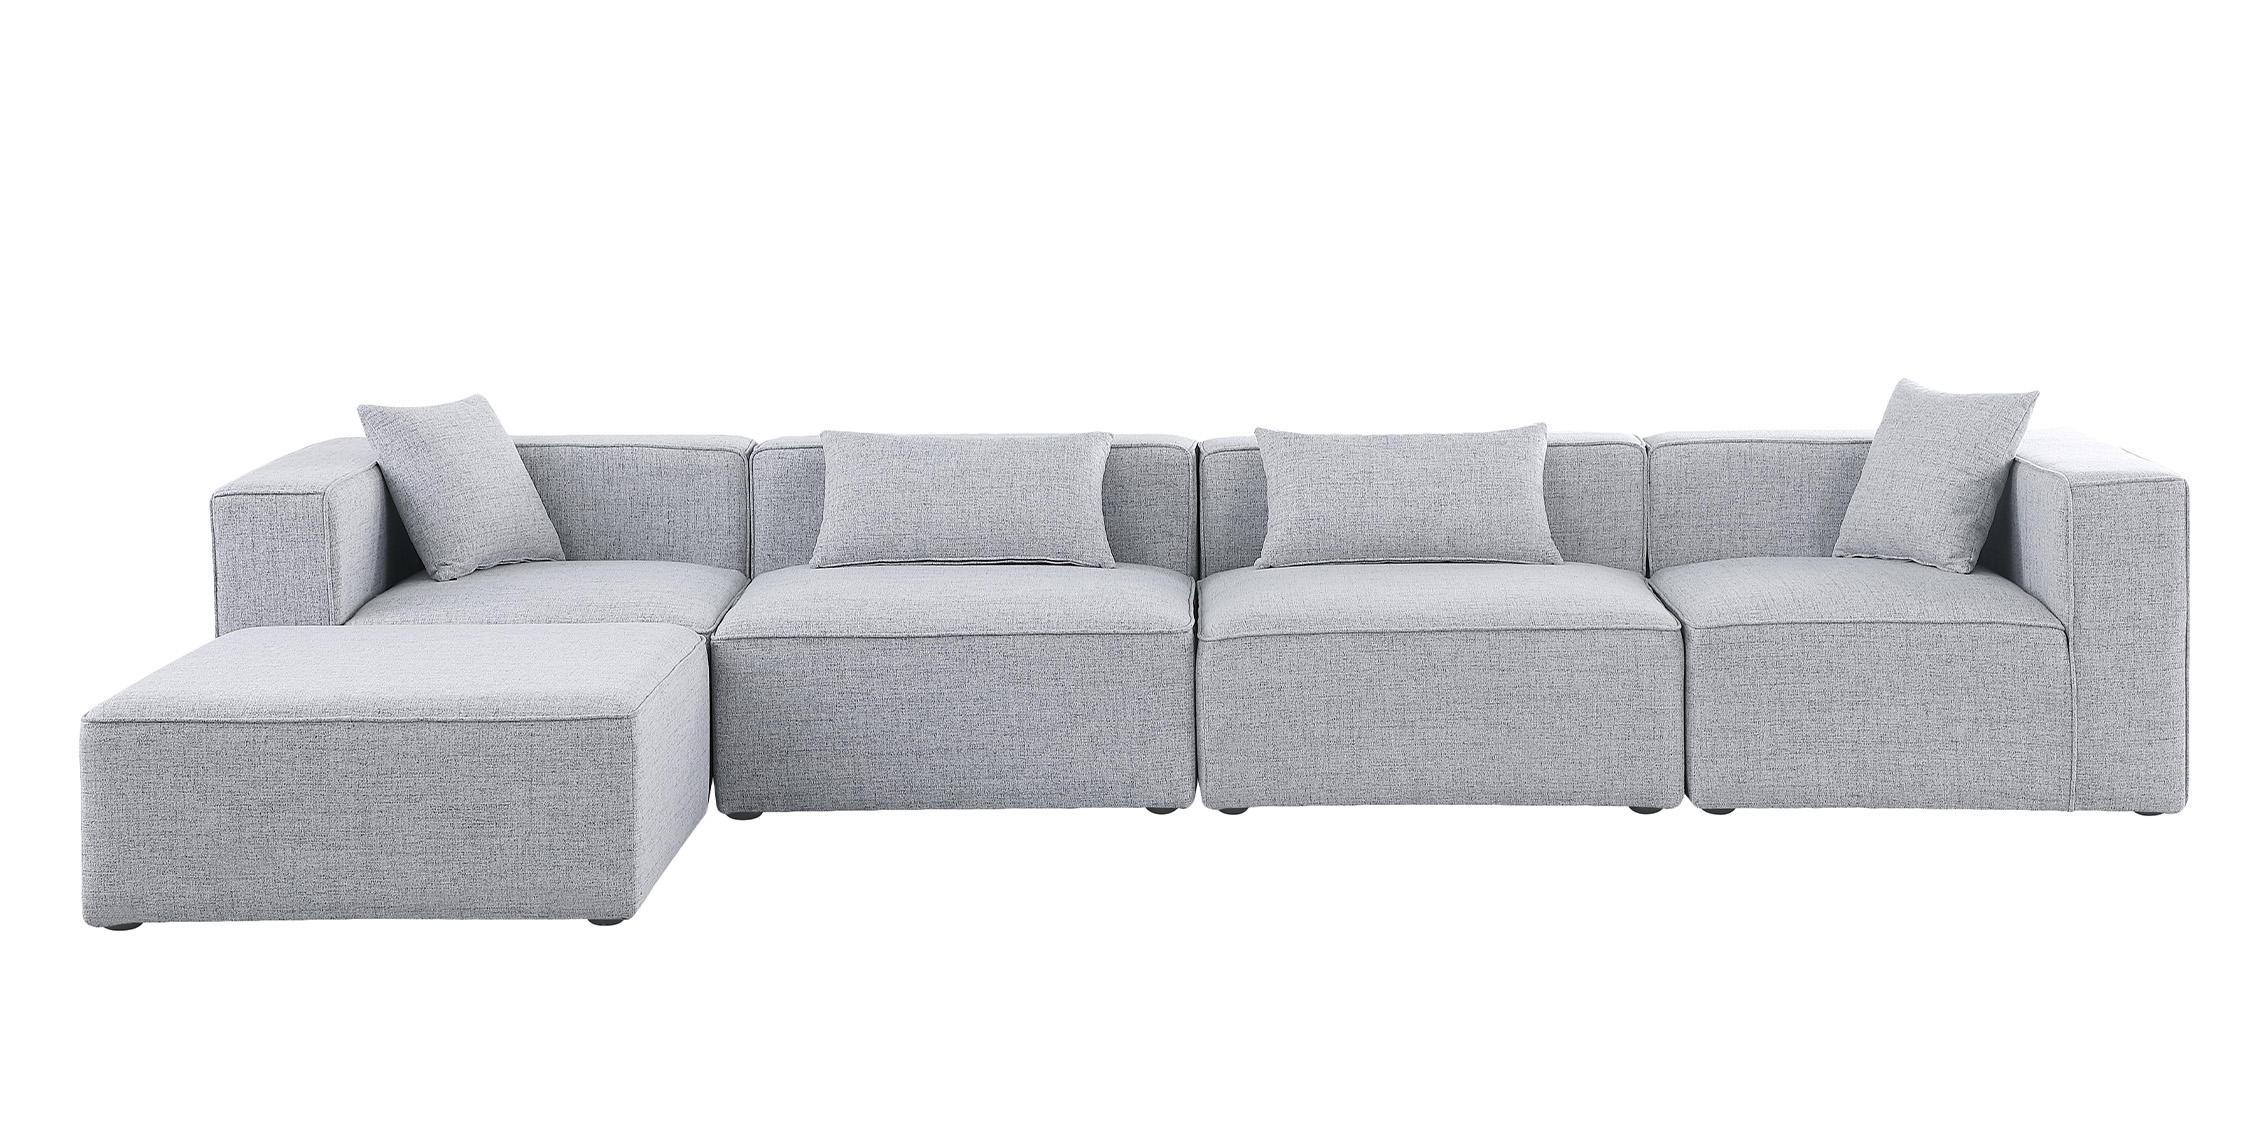 

    
630Grey-Sec5A Meridian Furniture Modular Sectional Sofa
